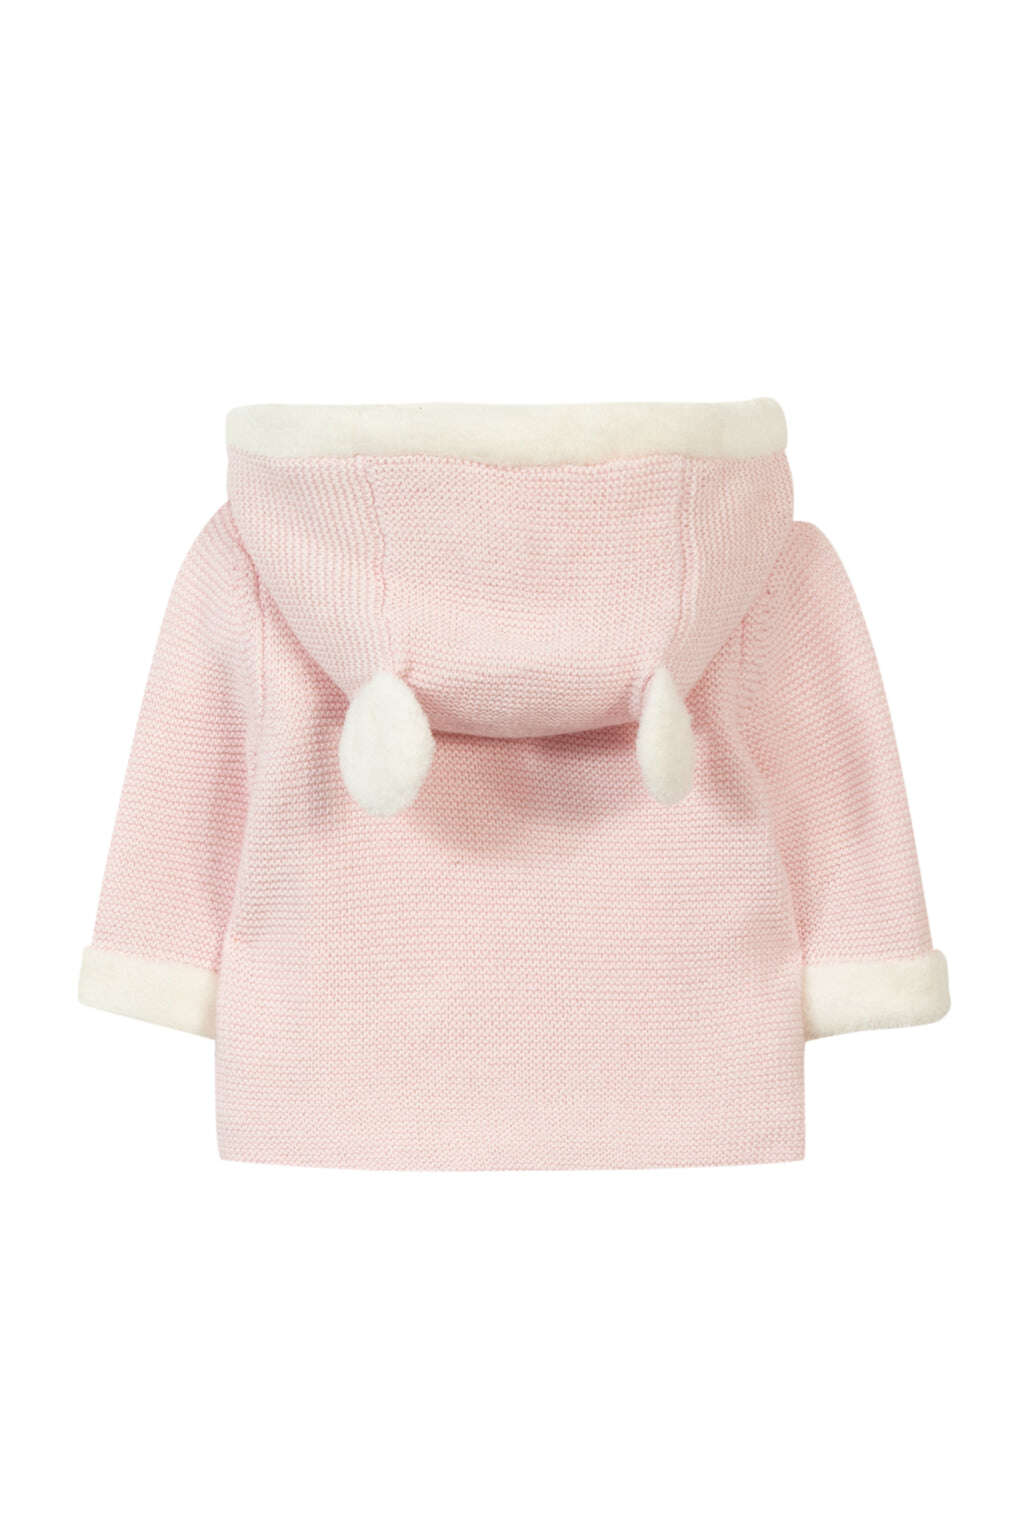 Manteau - Rose pâle tricot